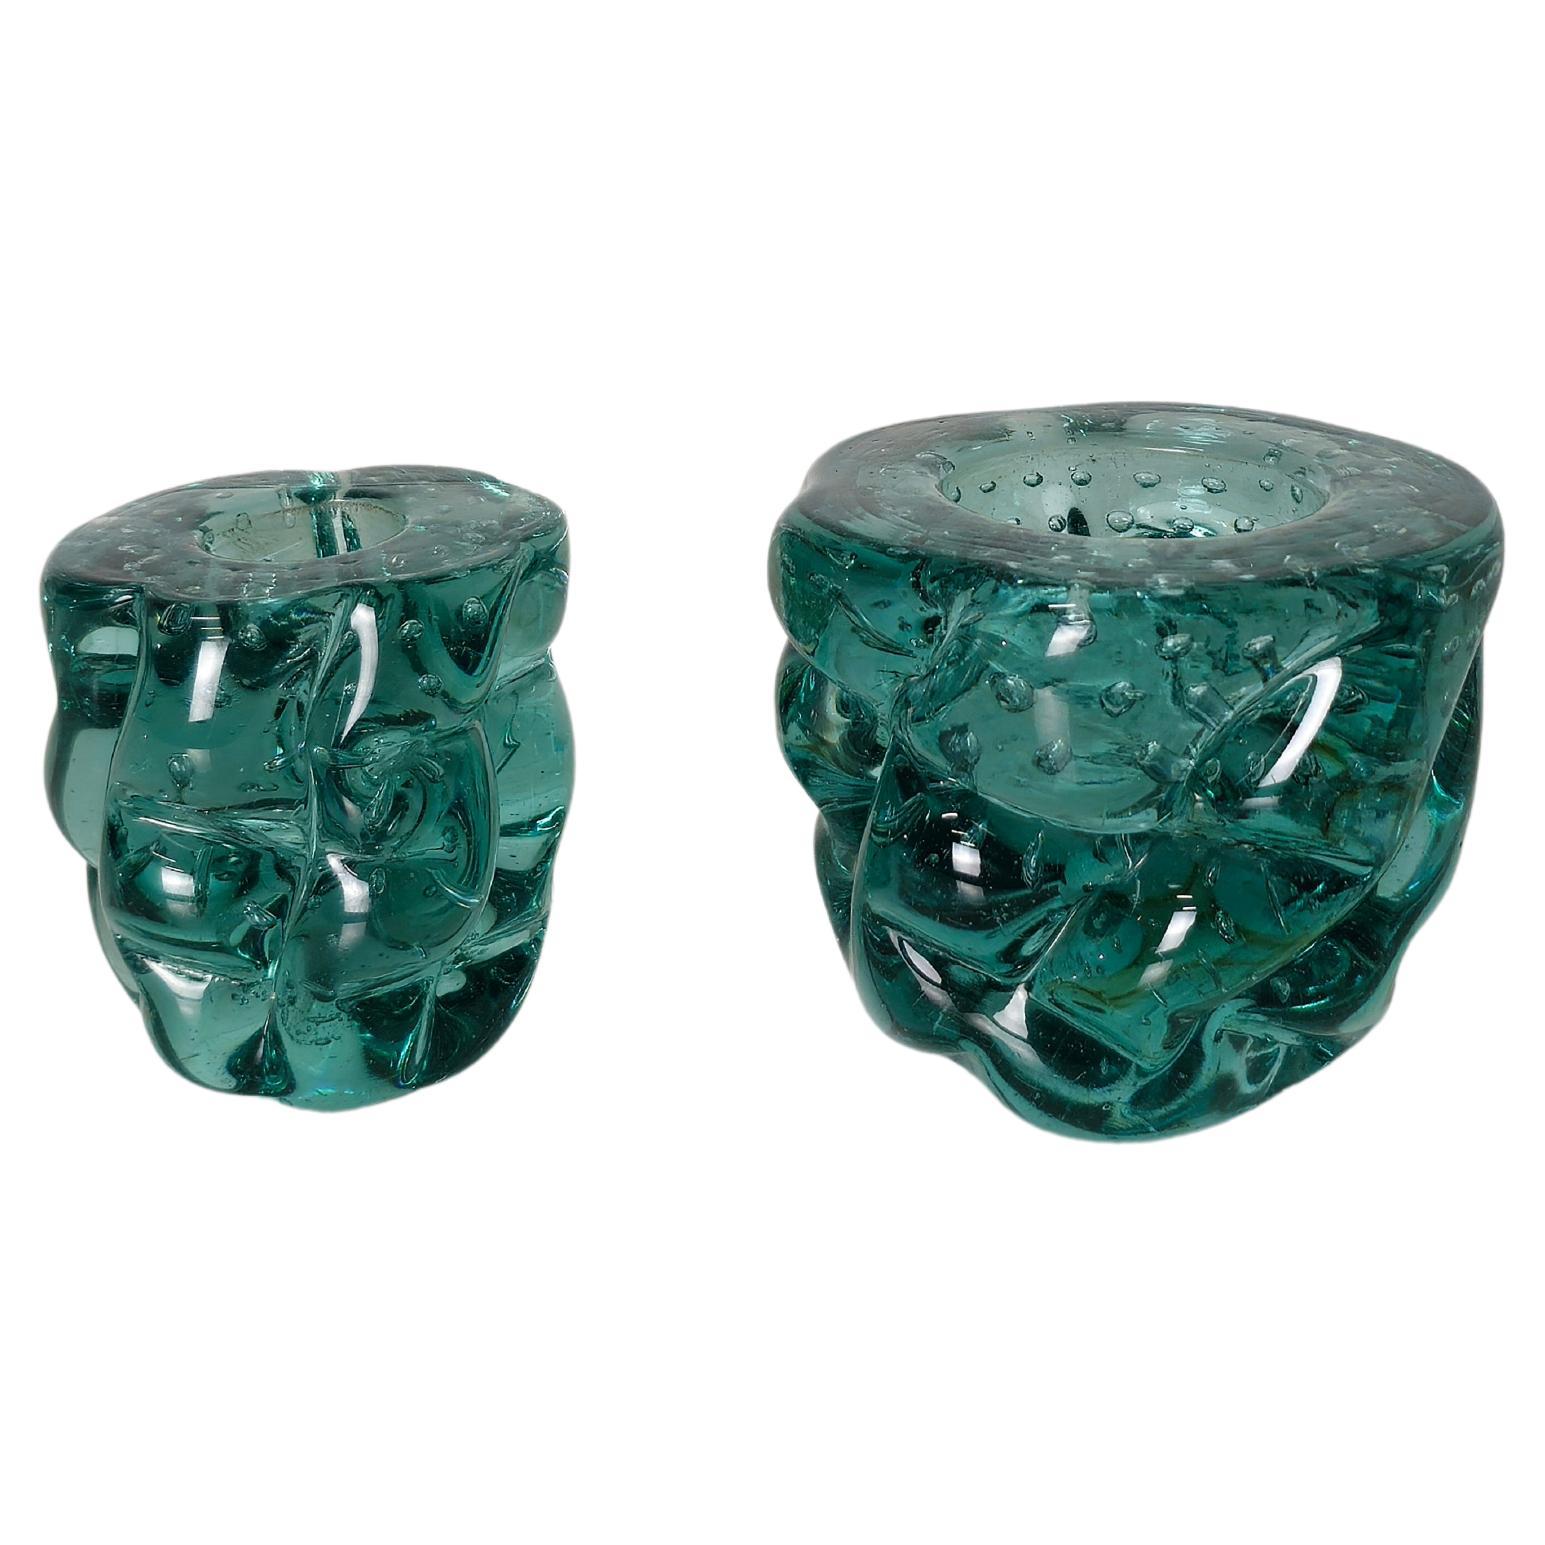 Lot de 2 objets décoratifs/petits vases en verre bullicante de Murano dans les tons vert aqua. Fabriqué dans les années 1960 par la célèbre entreprise Seguso de Murano.



Note : Nous essayons d'offrir à nos clients un excellent service, même pour